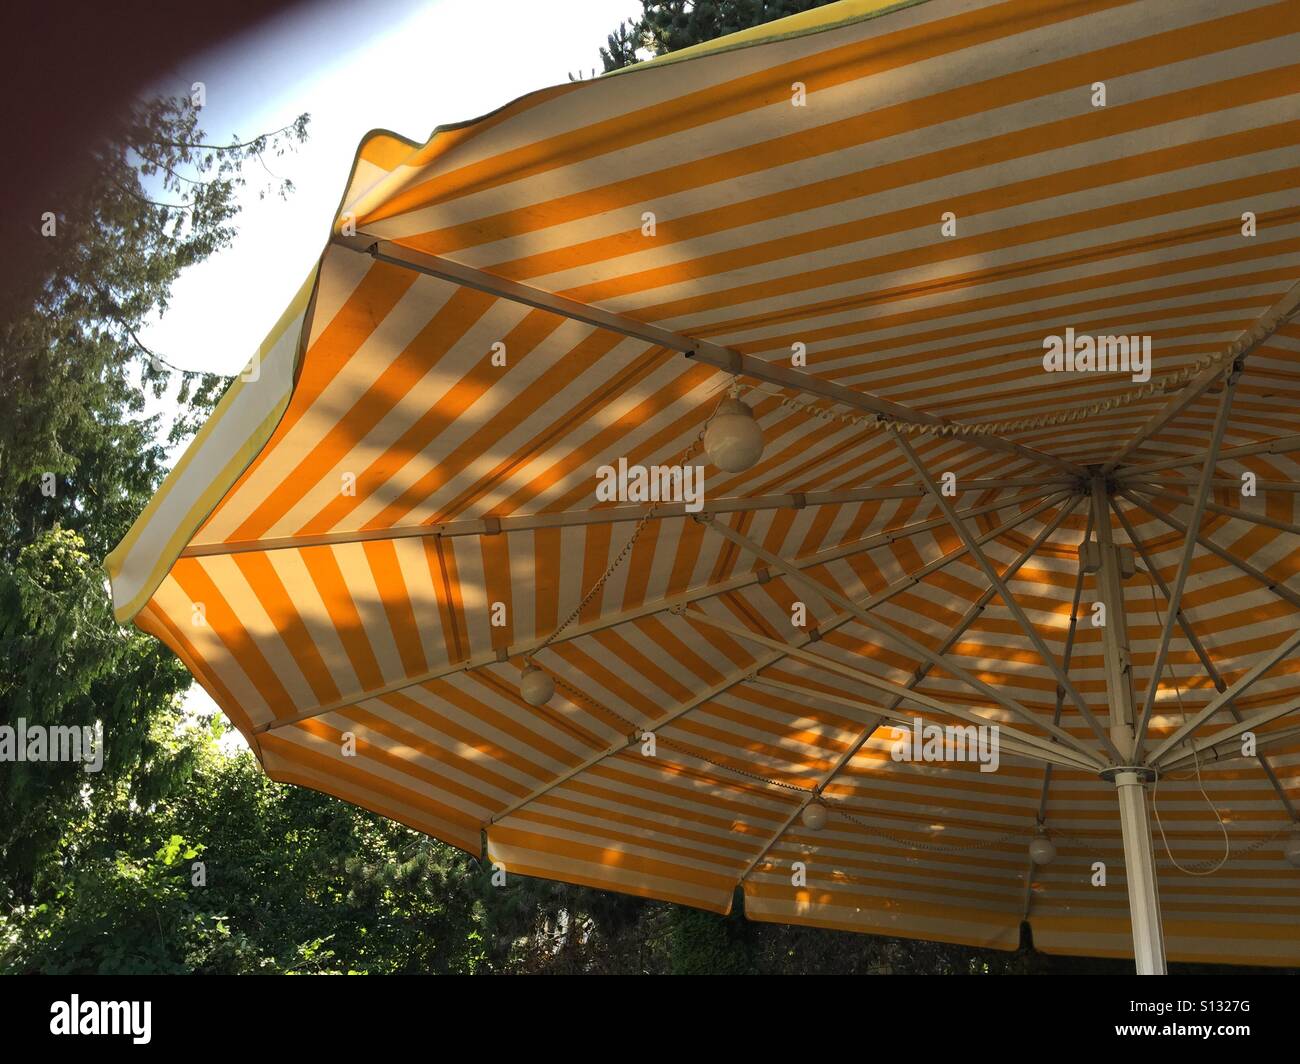 Sun-Brella,  Lunch under the yellow umbrella Stock Photo